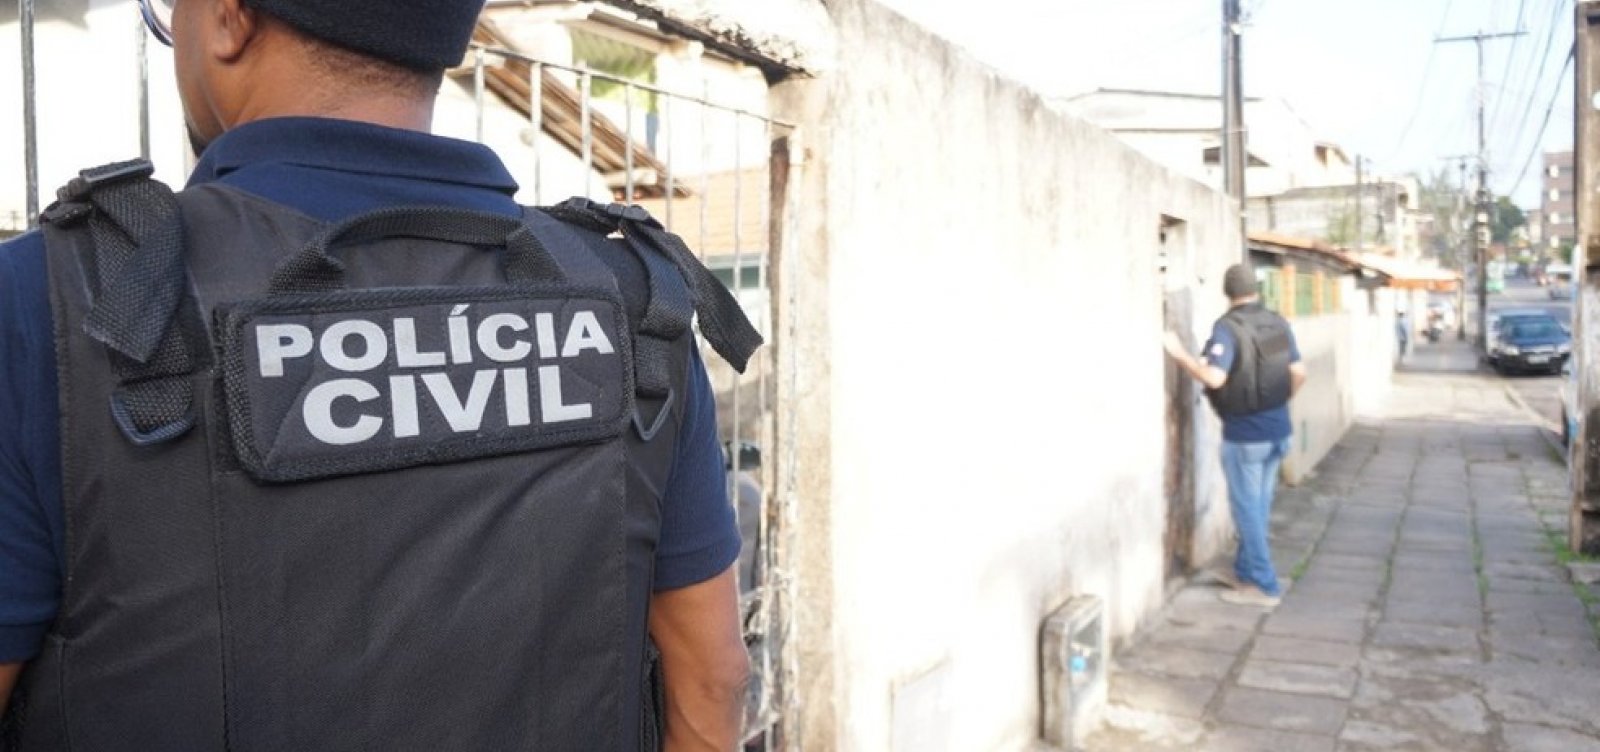 Bahia registra diminuição de 62,5% nos casos de roubos seguidos de morte em agosto